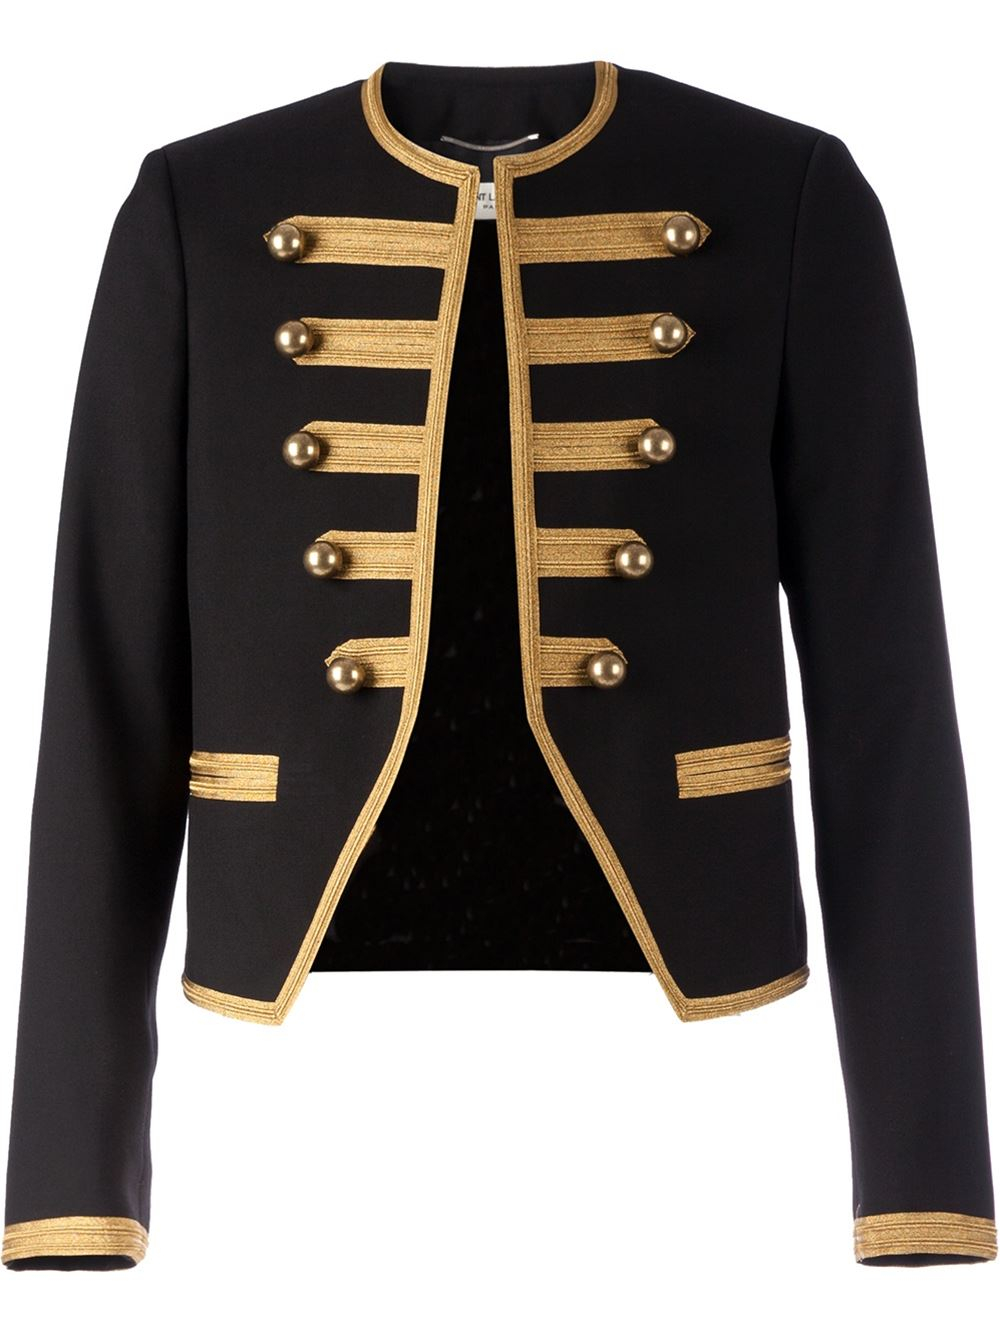 Lyst - Saint Laurent Cropped Officer Jacket in Black for Men